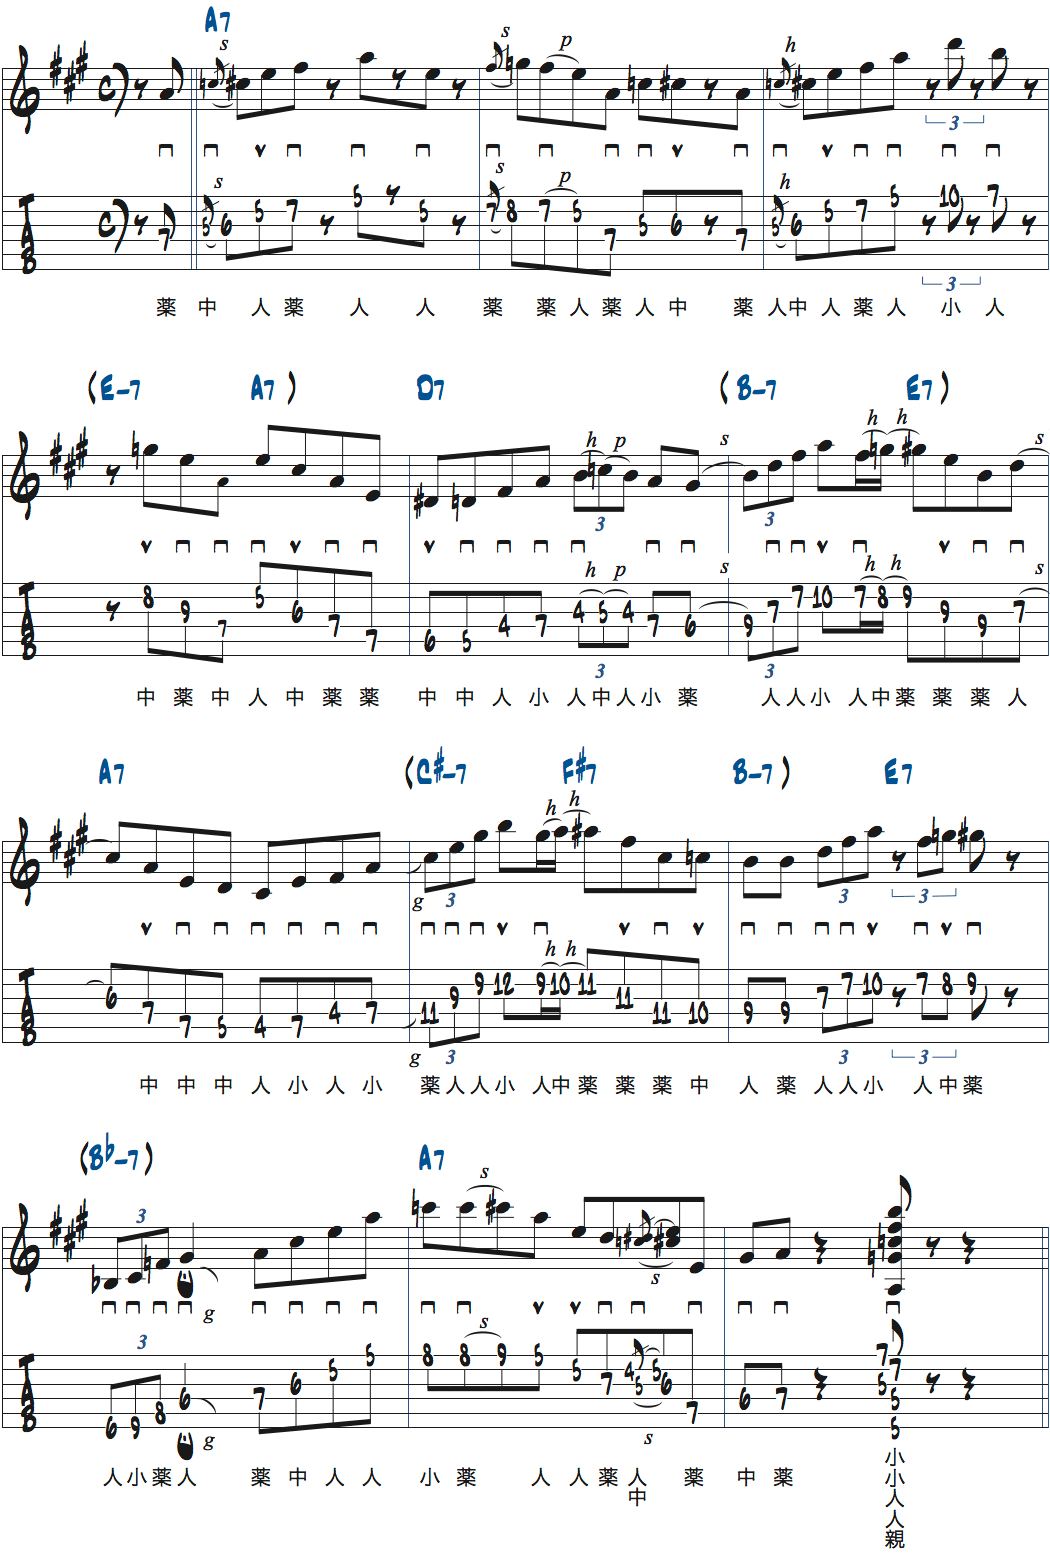 ジョシュ・スミスのII-Vを使ったブルースでのアドリブ例楽譜